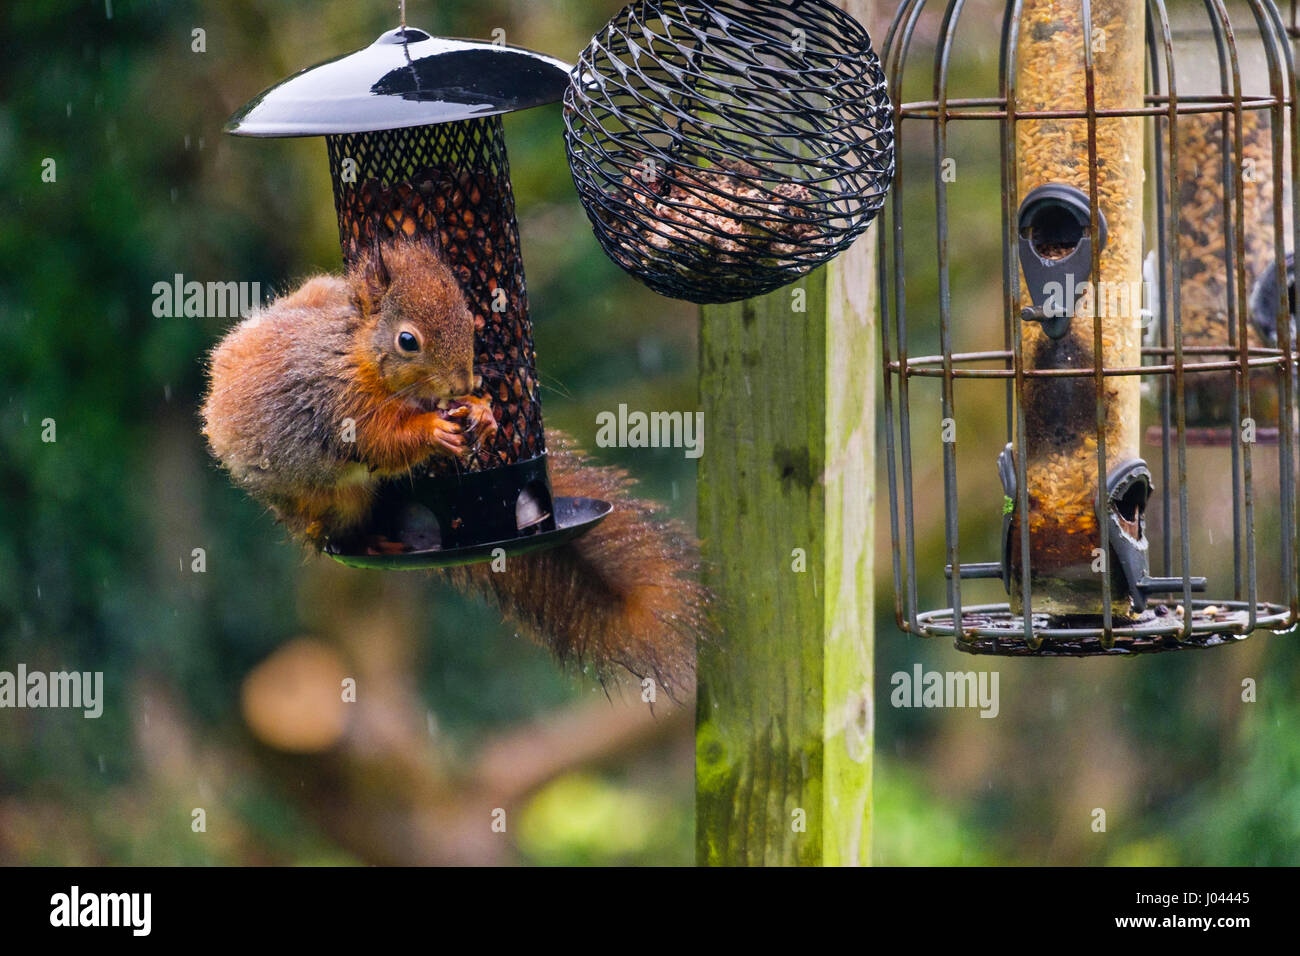 Un petit écureuil roux (Sciurus vulgaris) se nourrissent d'une arachide par un convoyeur de semences à l'épreuve des écureuils suspendue à un tableau d'oiseaux dans un jardin intérieur. Pays de Galles UK Banque D'Images